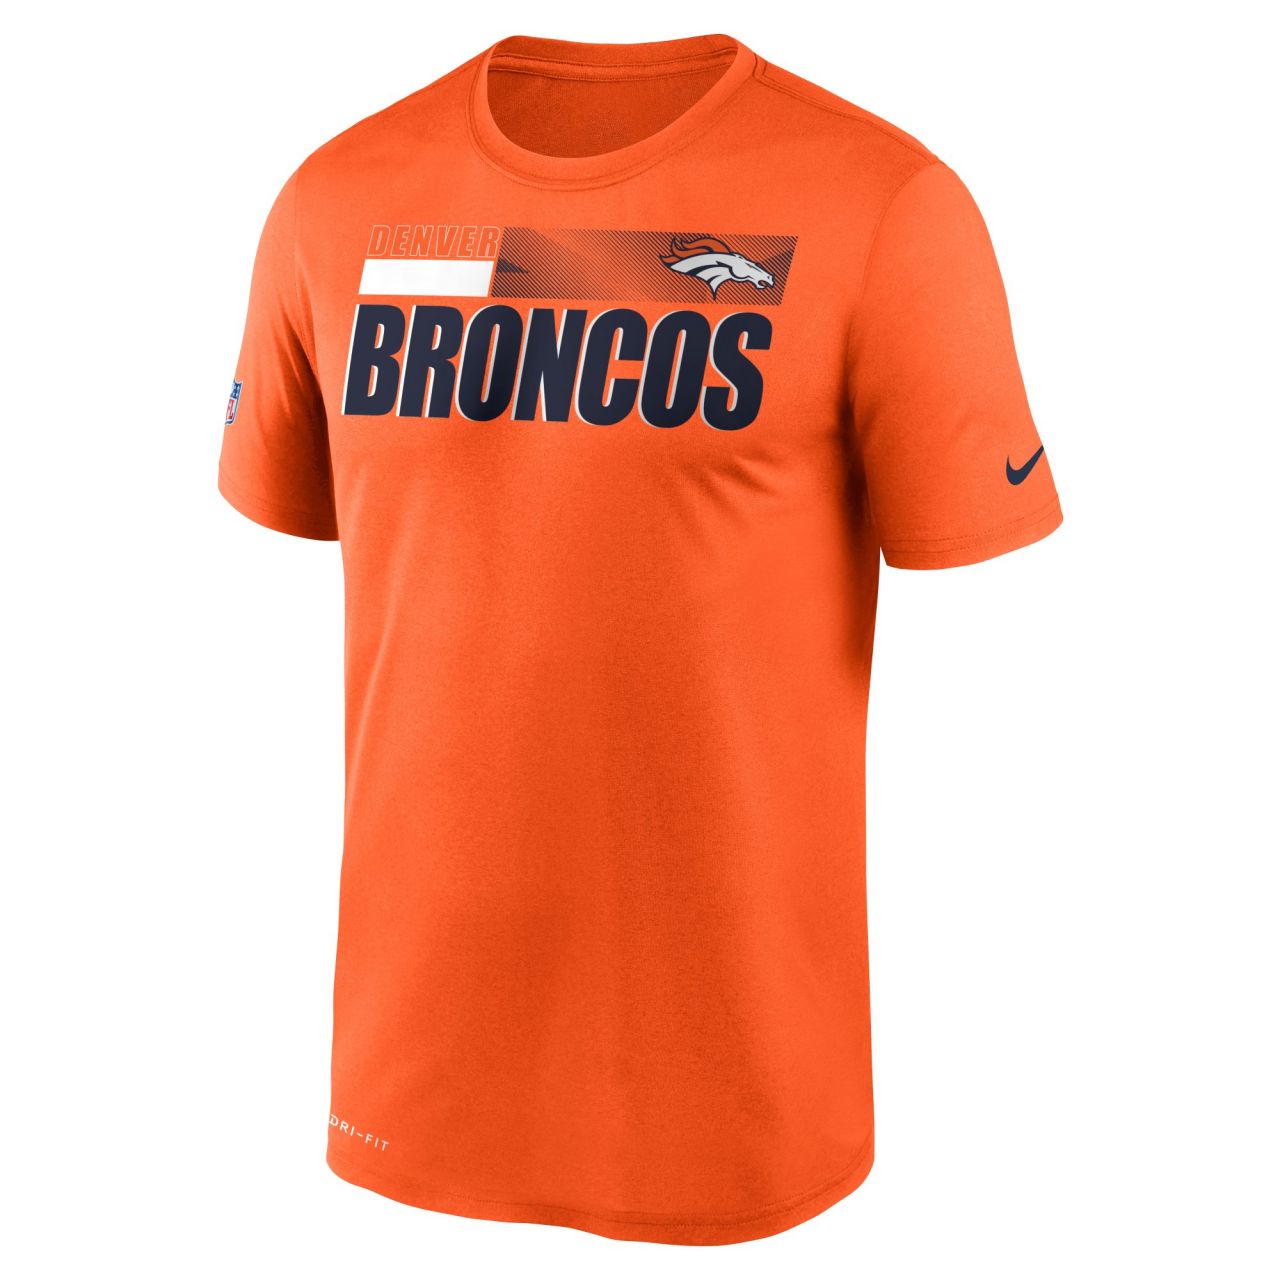 amfoo - Nike Dri-FIT Legend Shirt - SIDELINE Denver Broncos